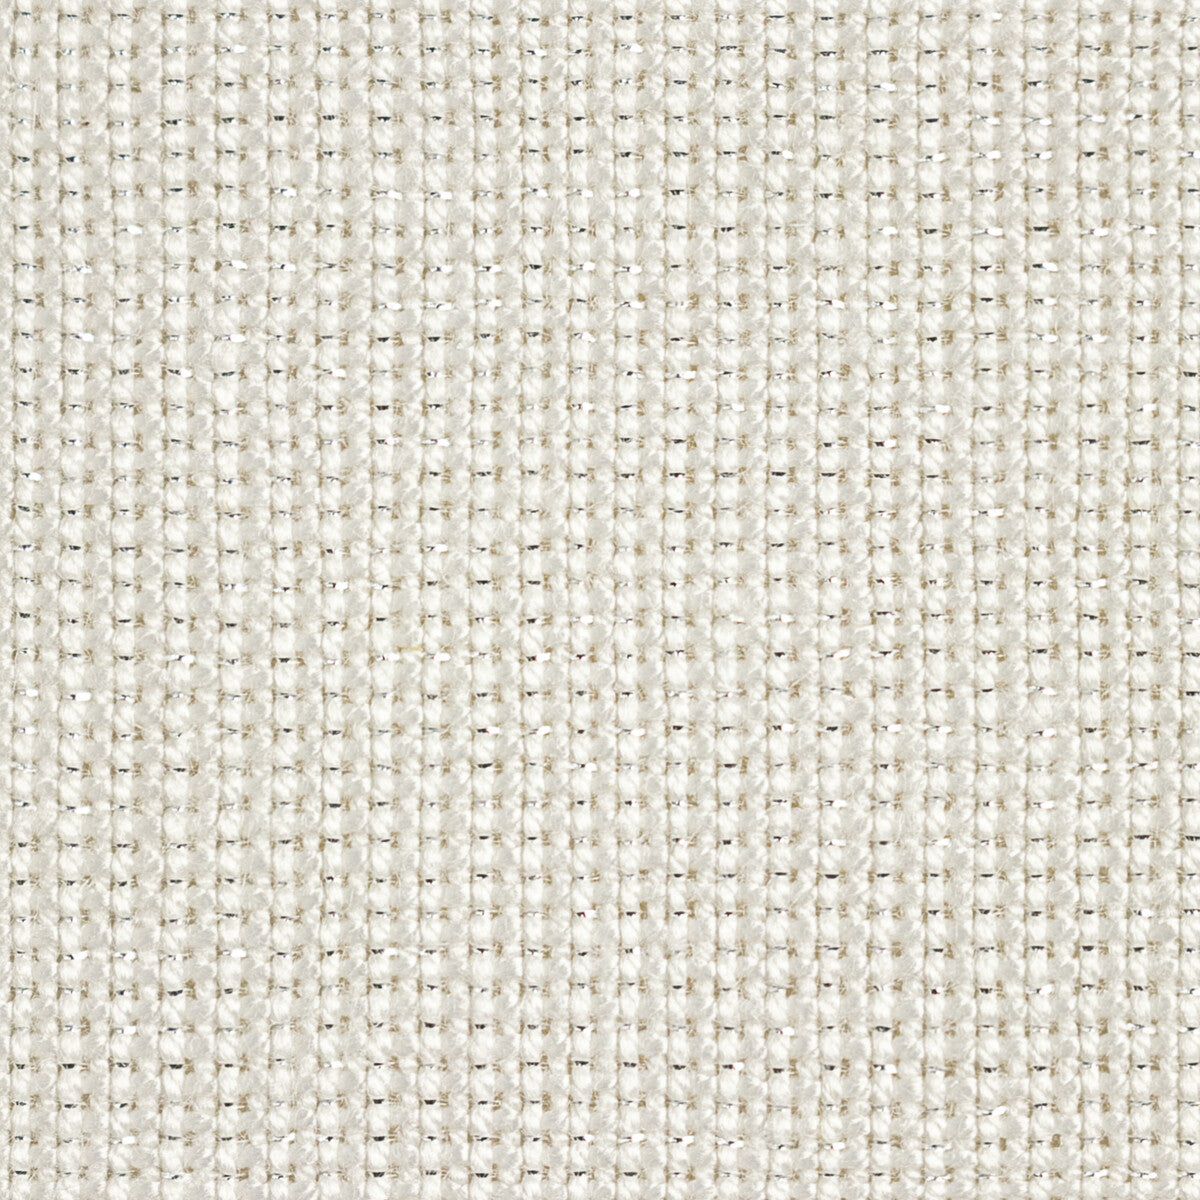 Kravet Basics fabric in 35785-101 color - pattern 35785.101.0 - by Kravet Basics